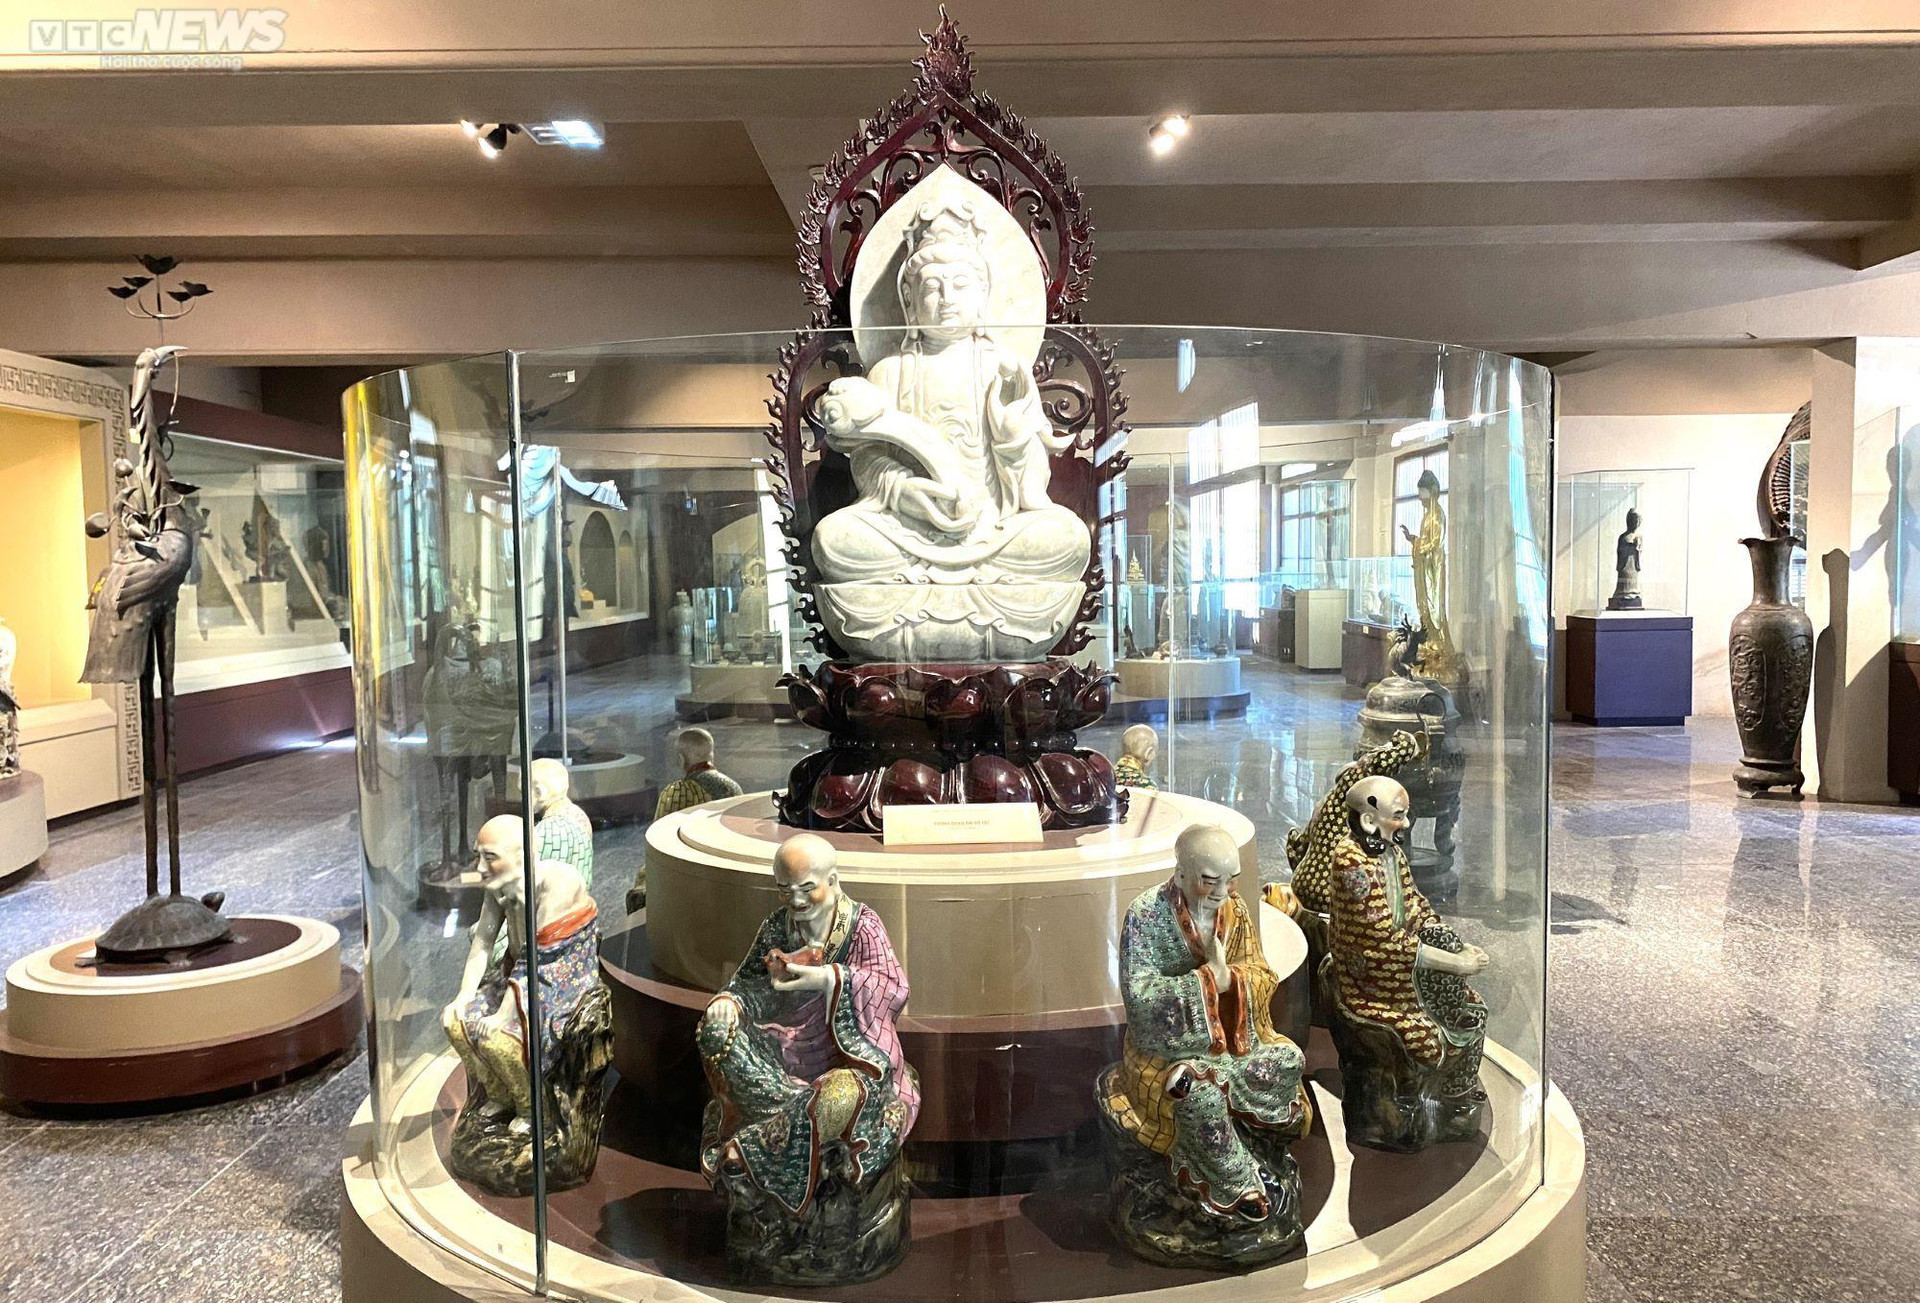 Bảo tàng còn lưu giữ nhiều bộ tượng Phật quý hiếm với rất nhiều chất liệu như gỗ, ngọc, đồng, sắt, đá… Trong đó, nhiều tượng được các chuyên gia giám định đánh giá là ngang tầm bảo vật quốc gia, có giá trị đặc biệt về mặt nghệ thuật lẫn giá trị tạo hình. Nổi bật như tượng bạch ngọc 